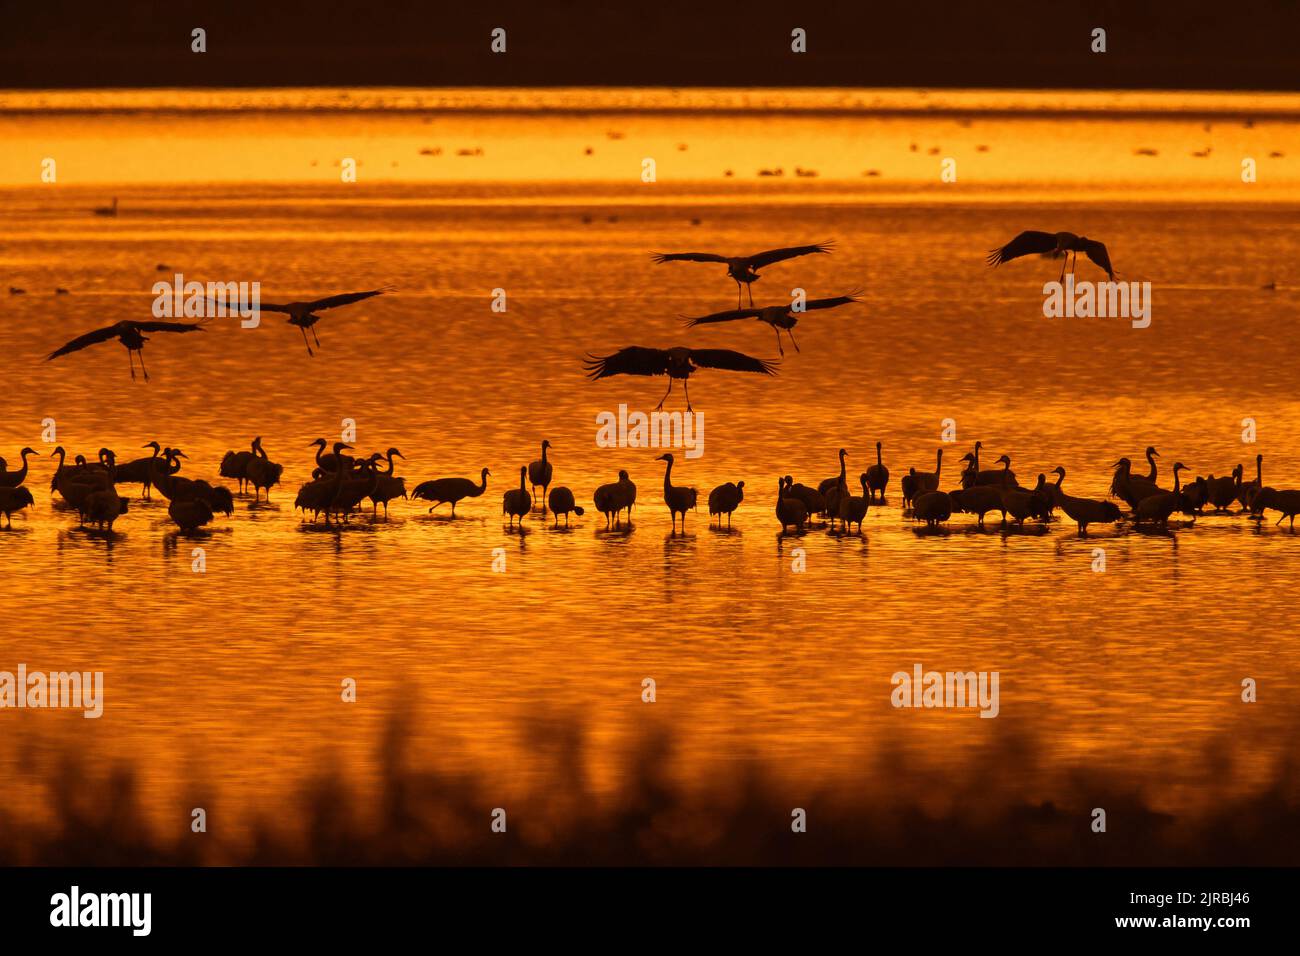 Schar von gewöhnlichen Kranichen / eurasische Kranichgruppe (Grus grus), die sich in seichtem Wasser am Roosting-Standort versammelt, bei Sonnenuntergang im Herbst/Herbst silhouettiert Stockfoto